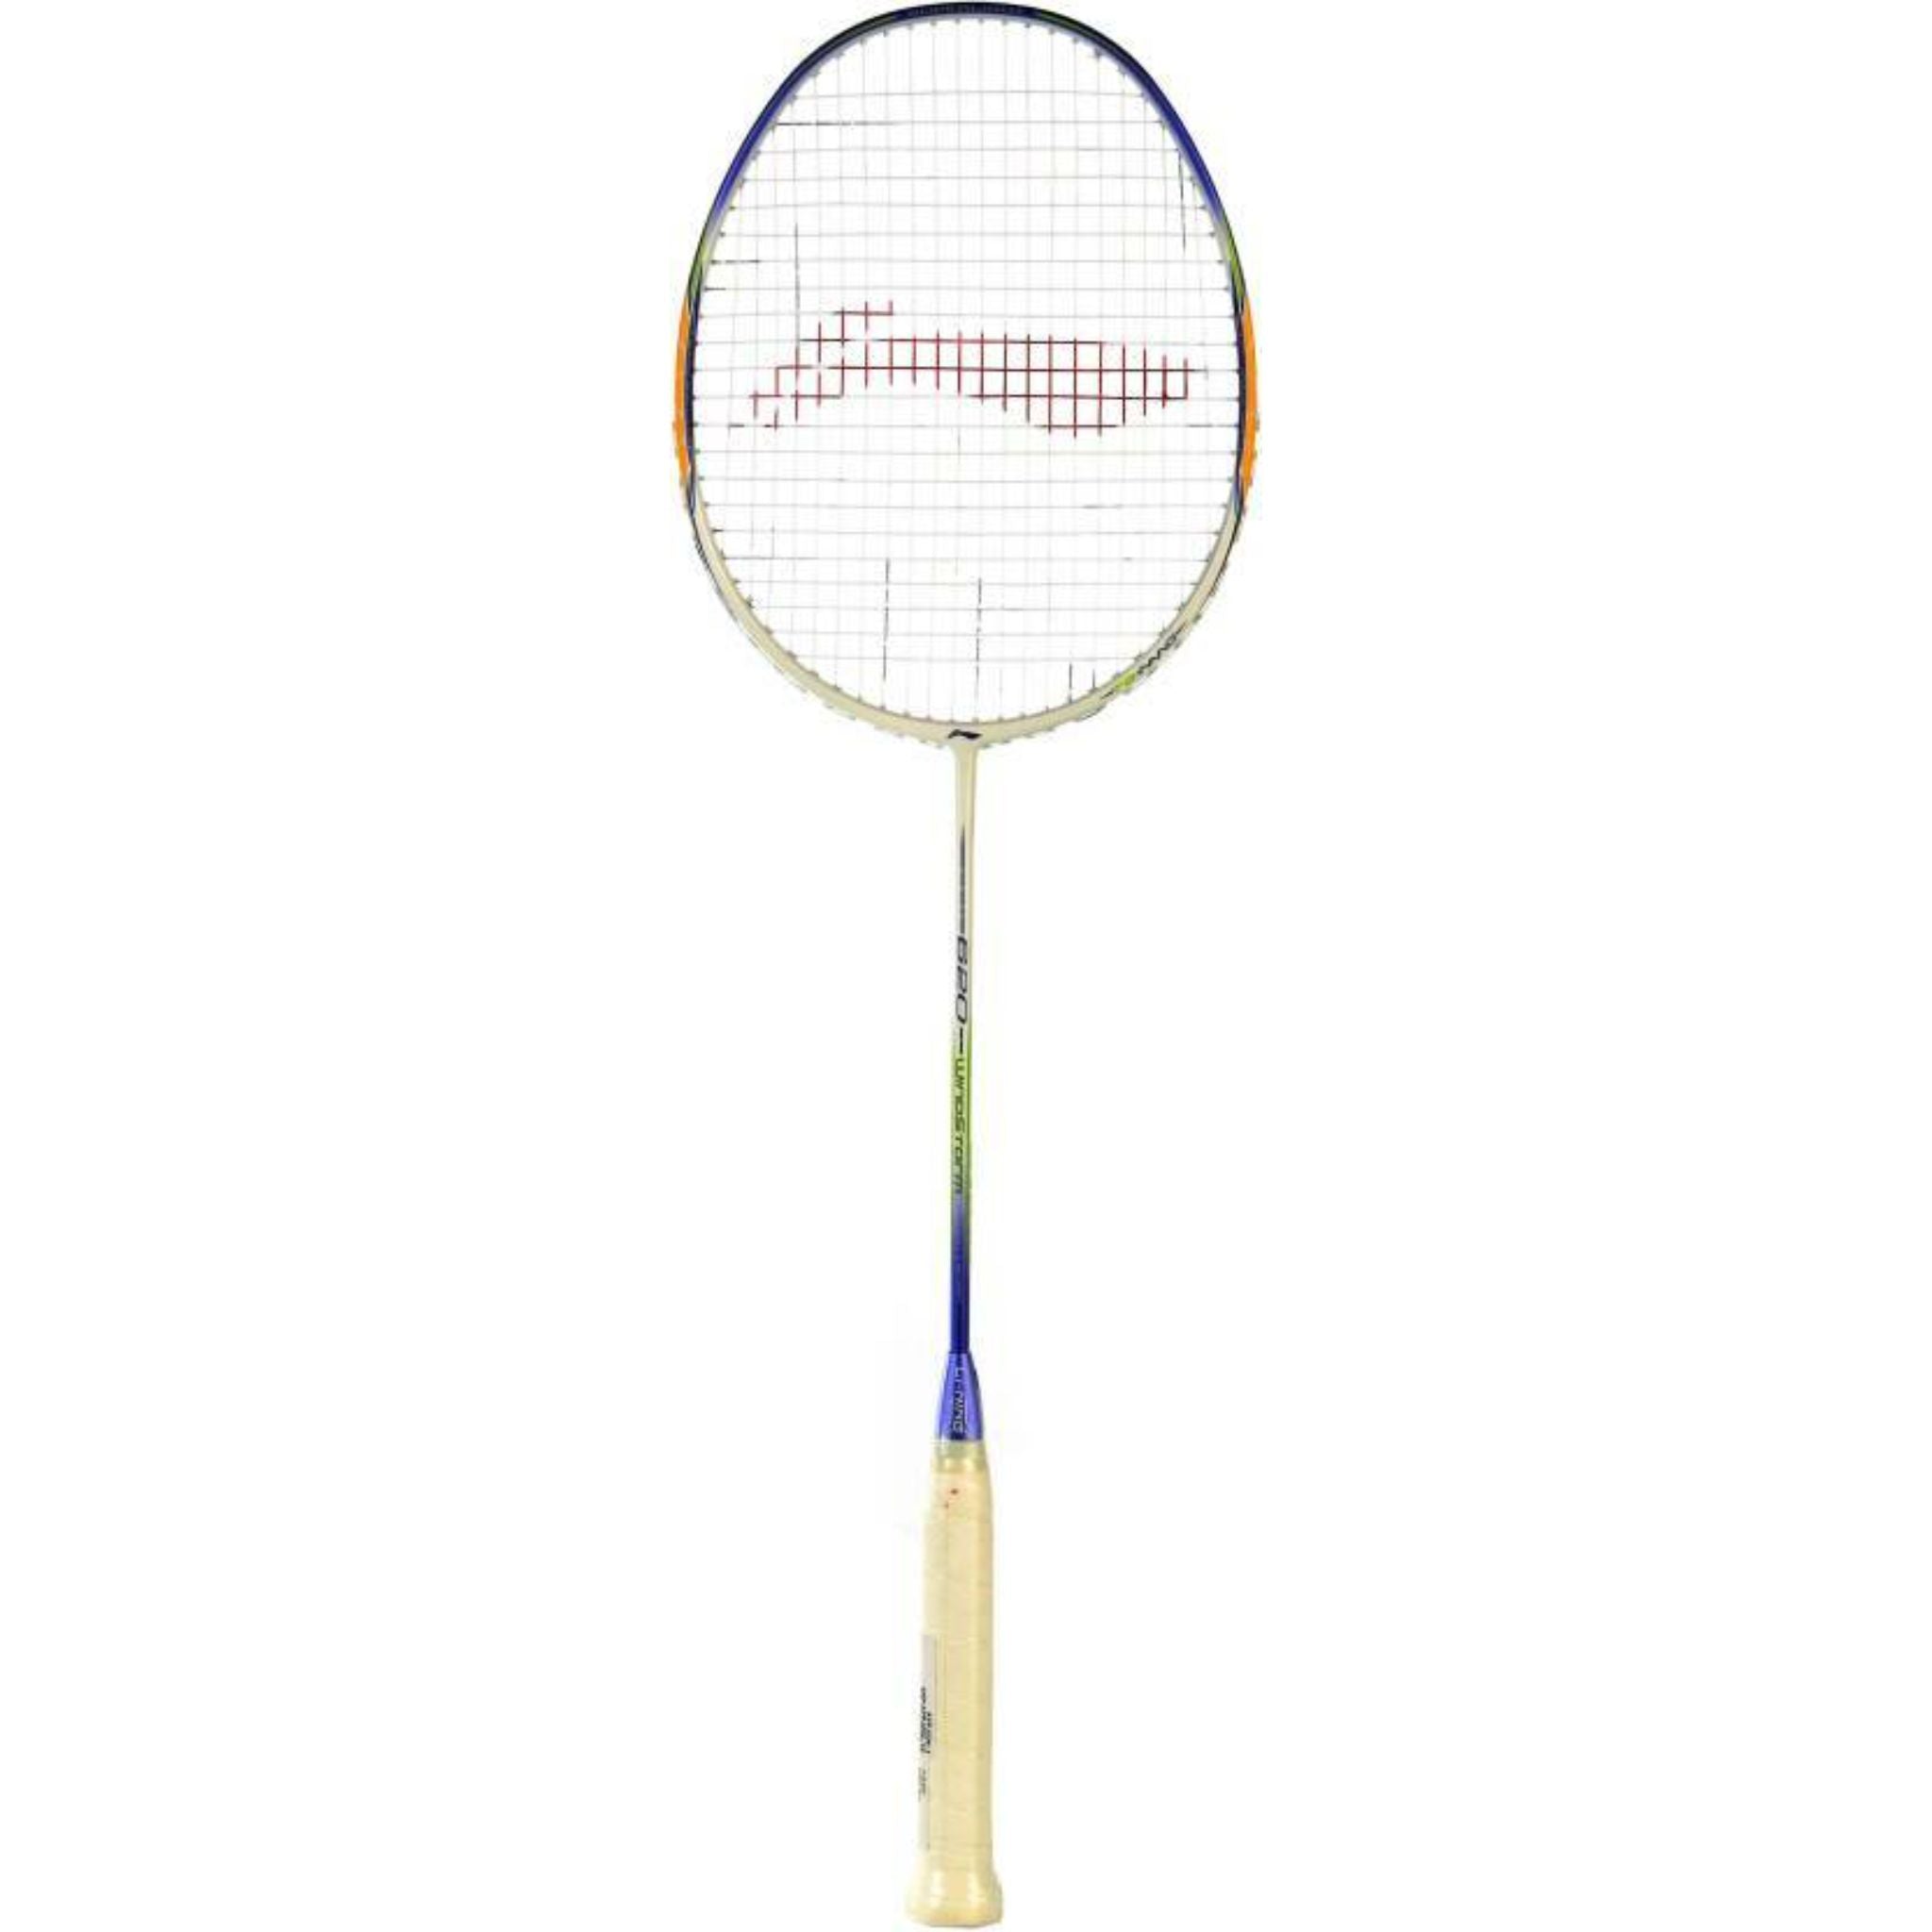 LI-NING 620 Windstorm Carbon Fiber Badminton Racquet